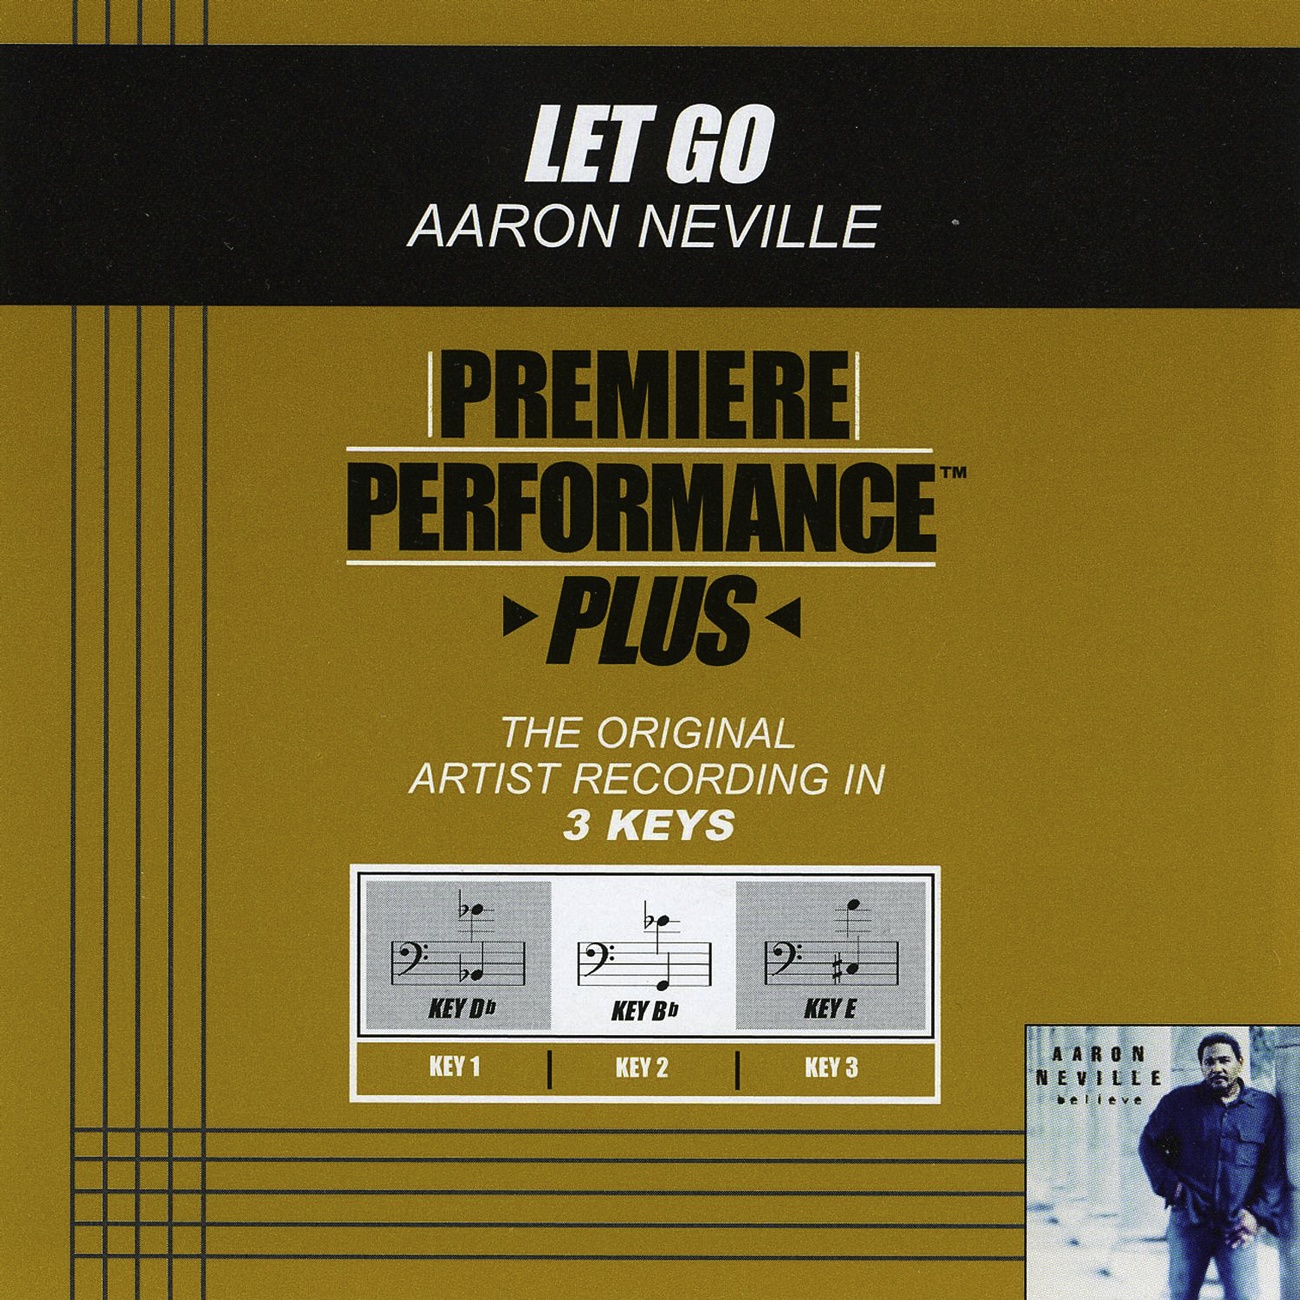 Premiere Performance Plus: Let Go